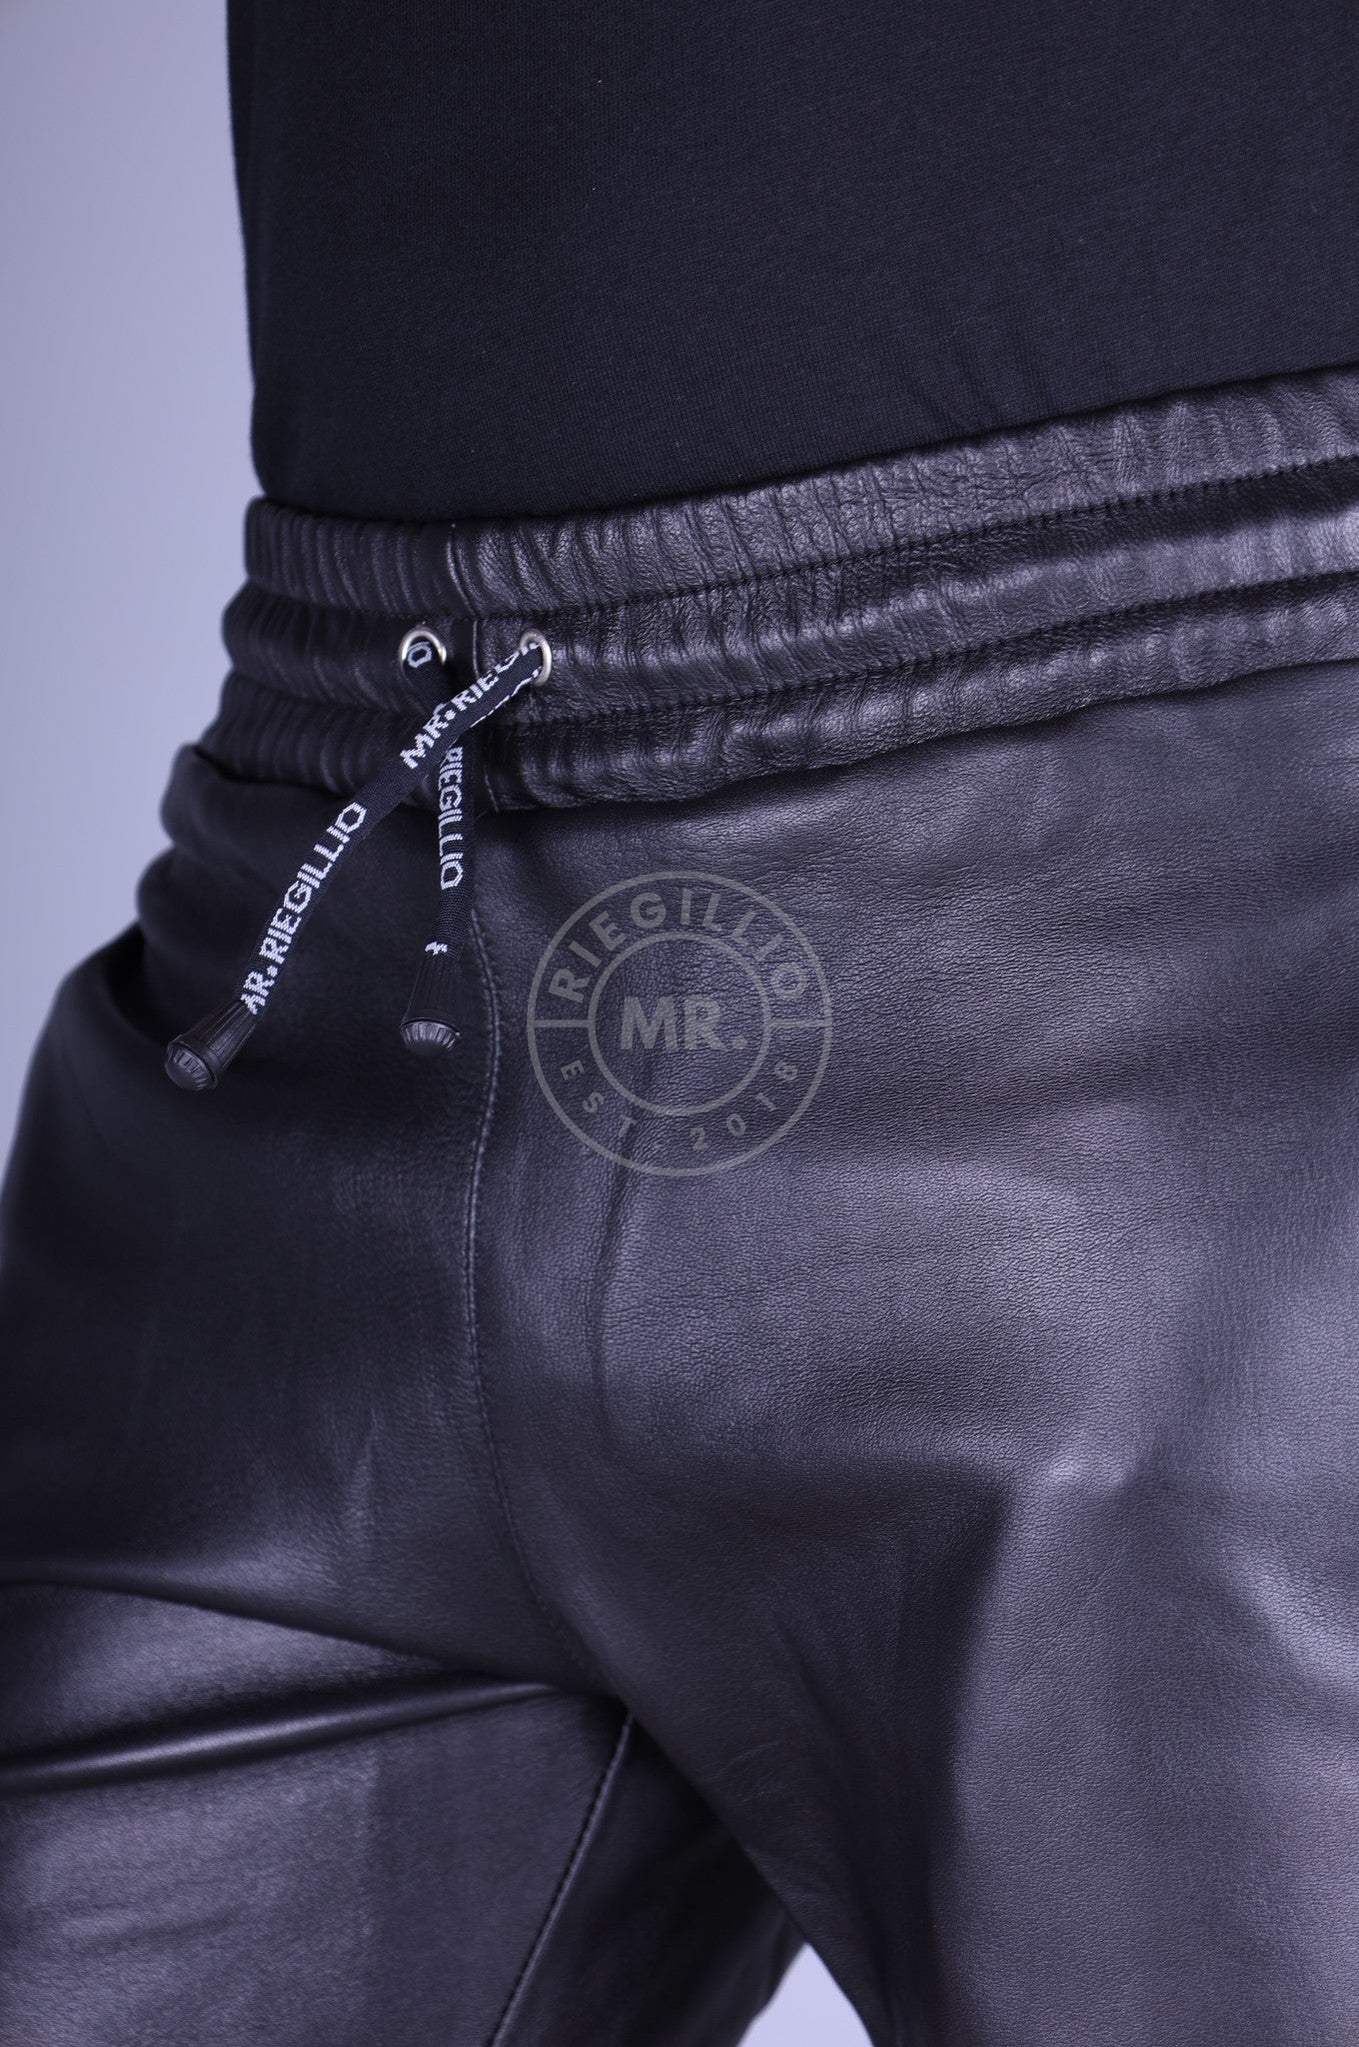 Schwarze Lederhose 5 Pocket von MR. Riegillio